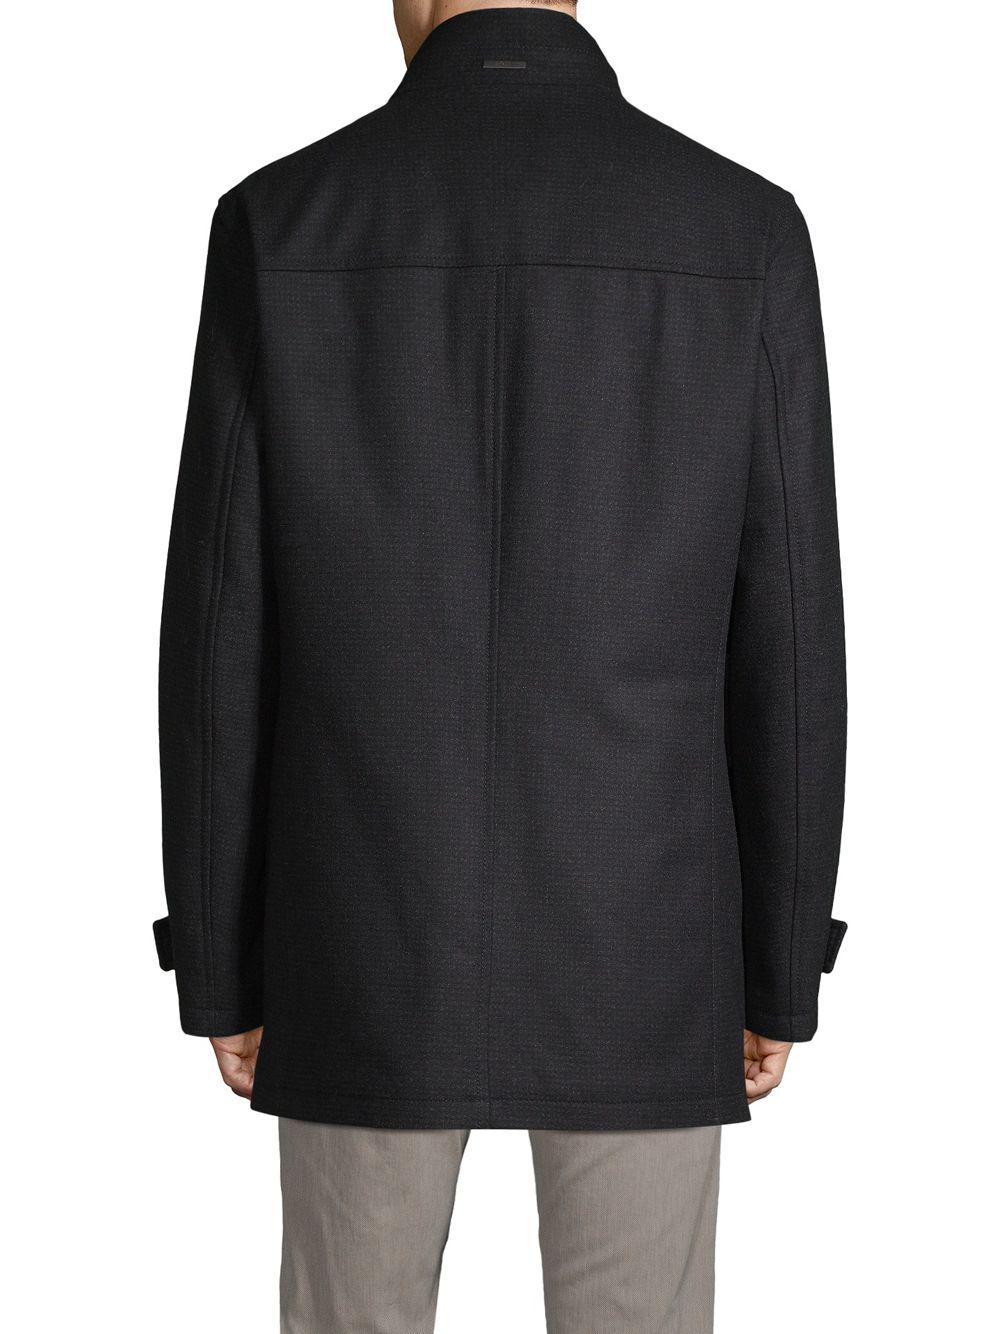 BOSS by HUGO BOSS Wool Camlow 2-in-1 Jacket in Dark Grey (Gray) for Men -  Lyst